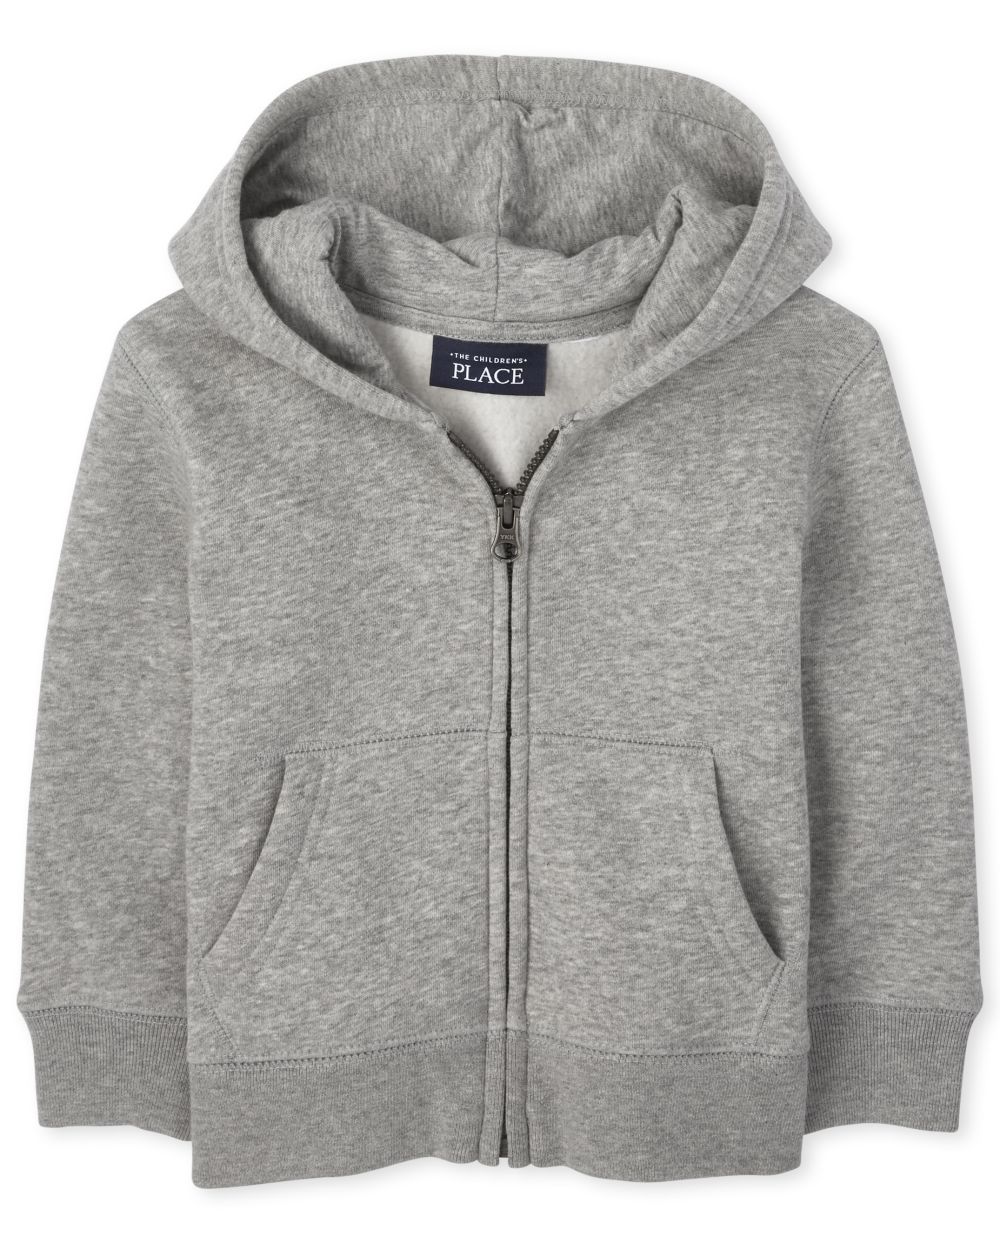 grey toddler hoodie